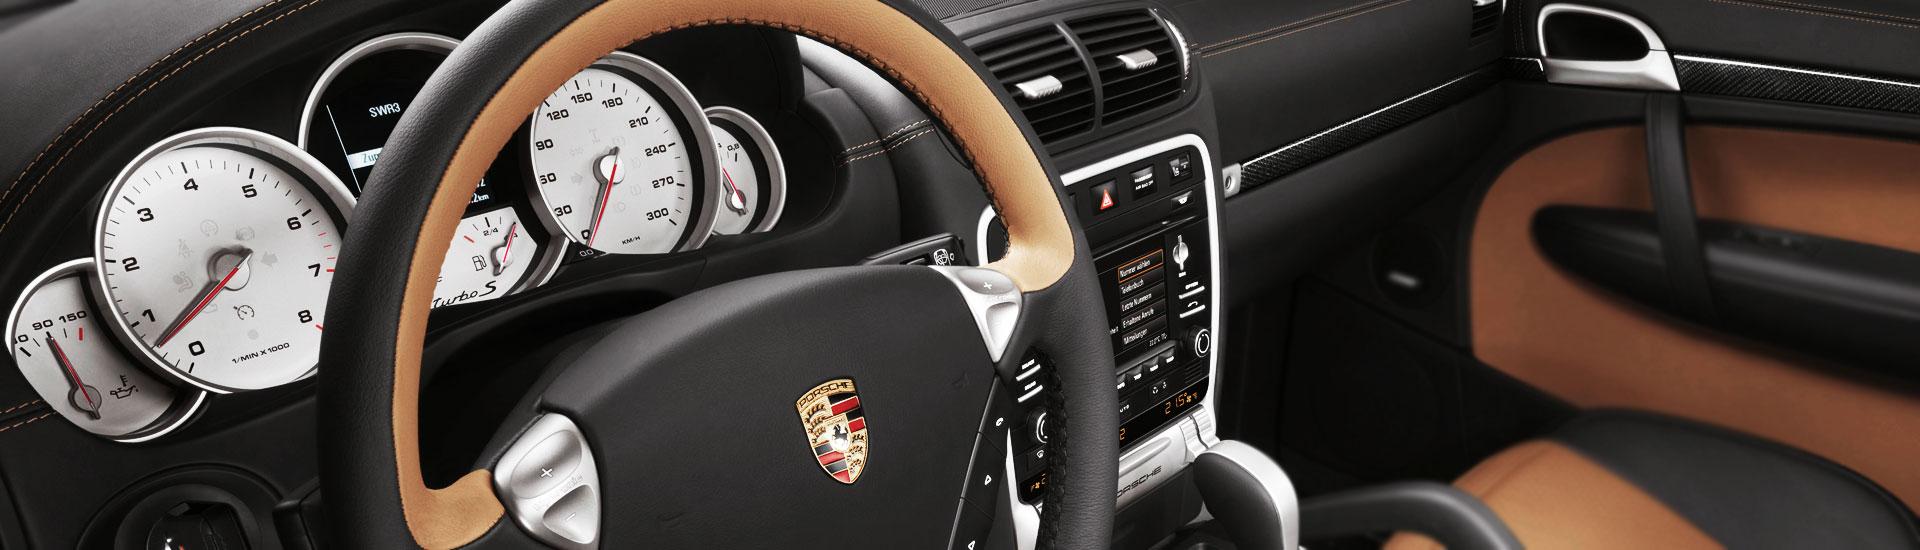 2013 Porsche Cayenne Custom Dash Kits